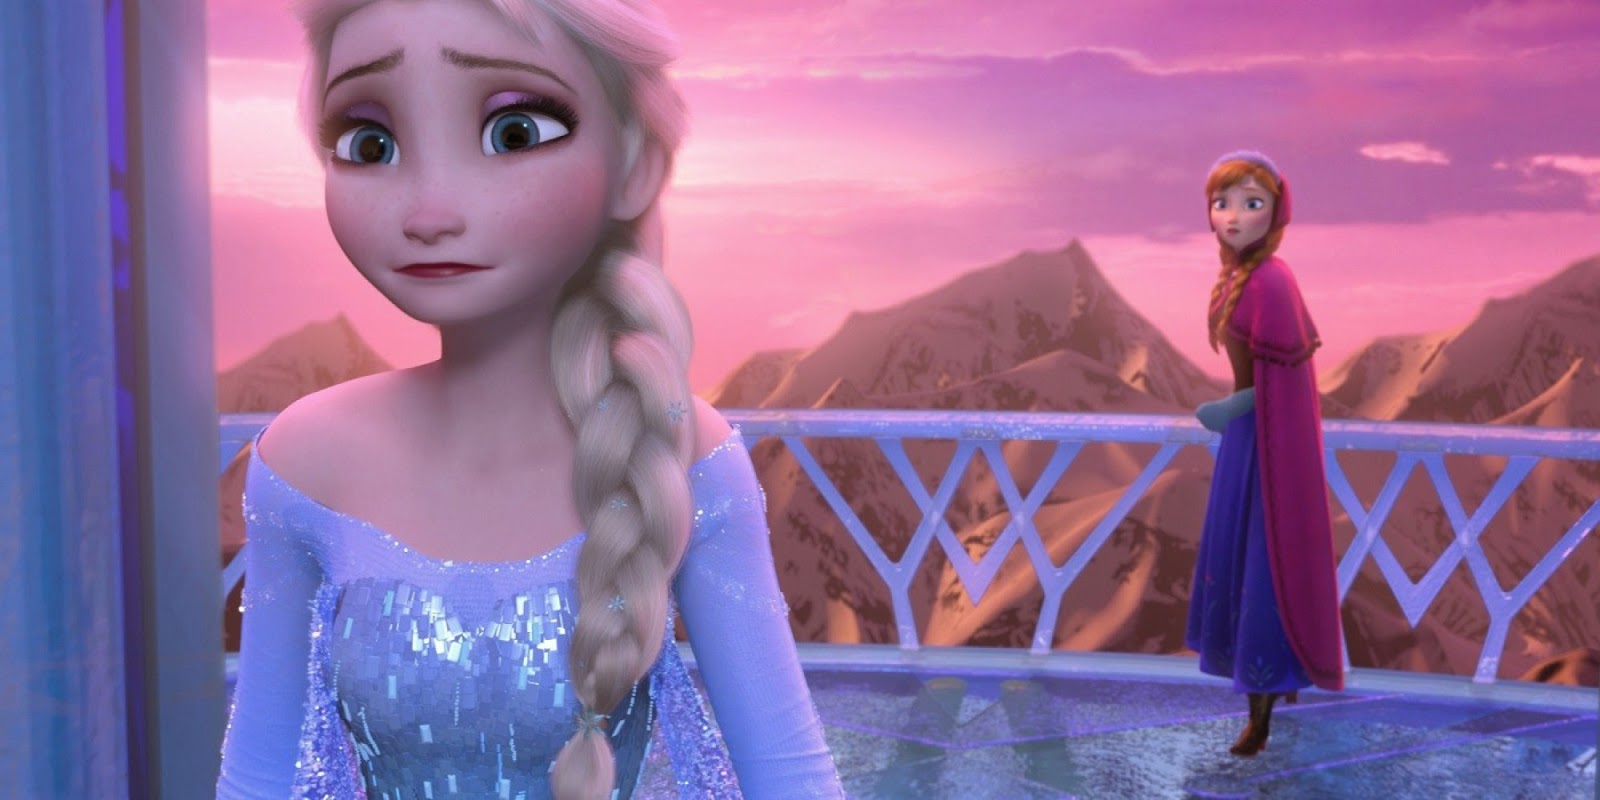 Kumpulan Gambar Frozen | Gambar Lucu Terbaru Cartoon Animation Pictures